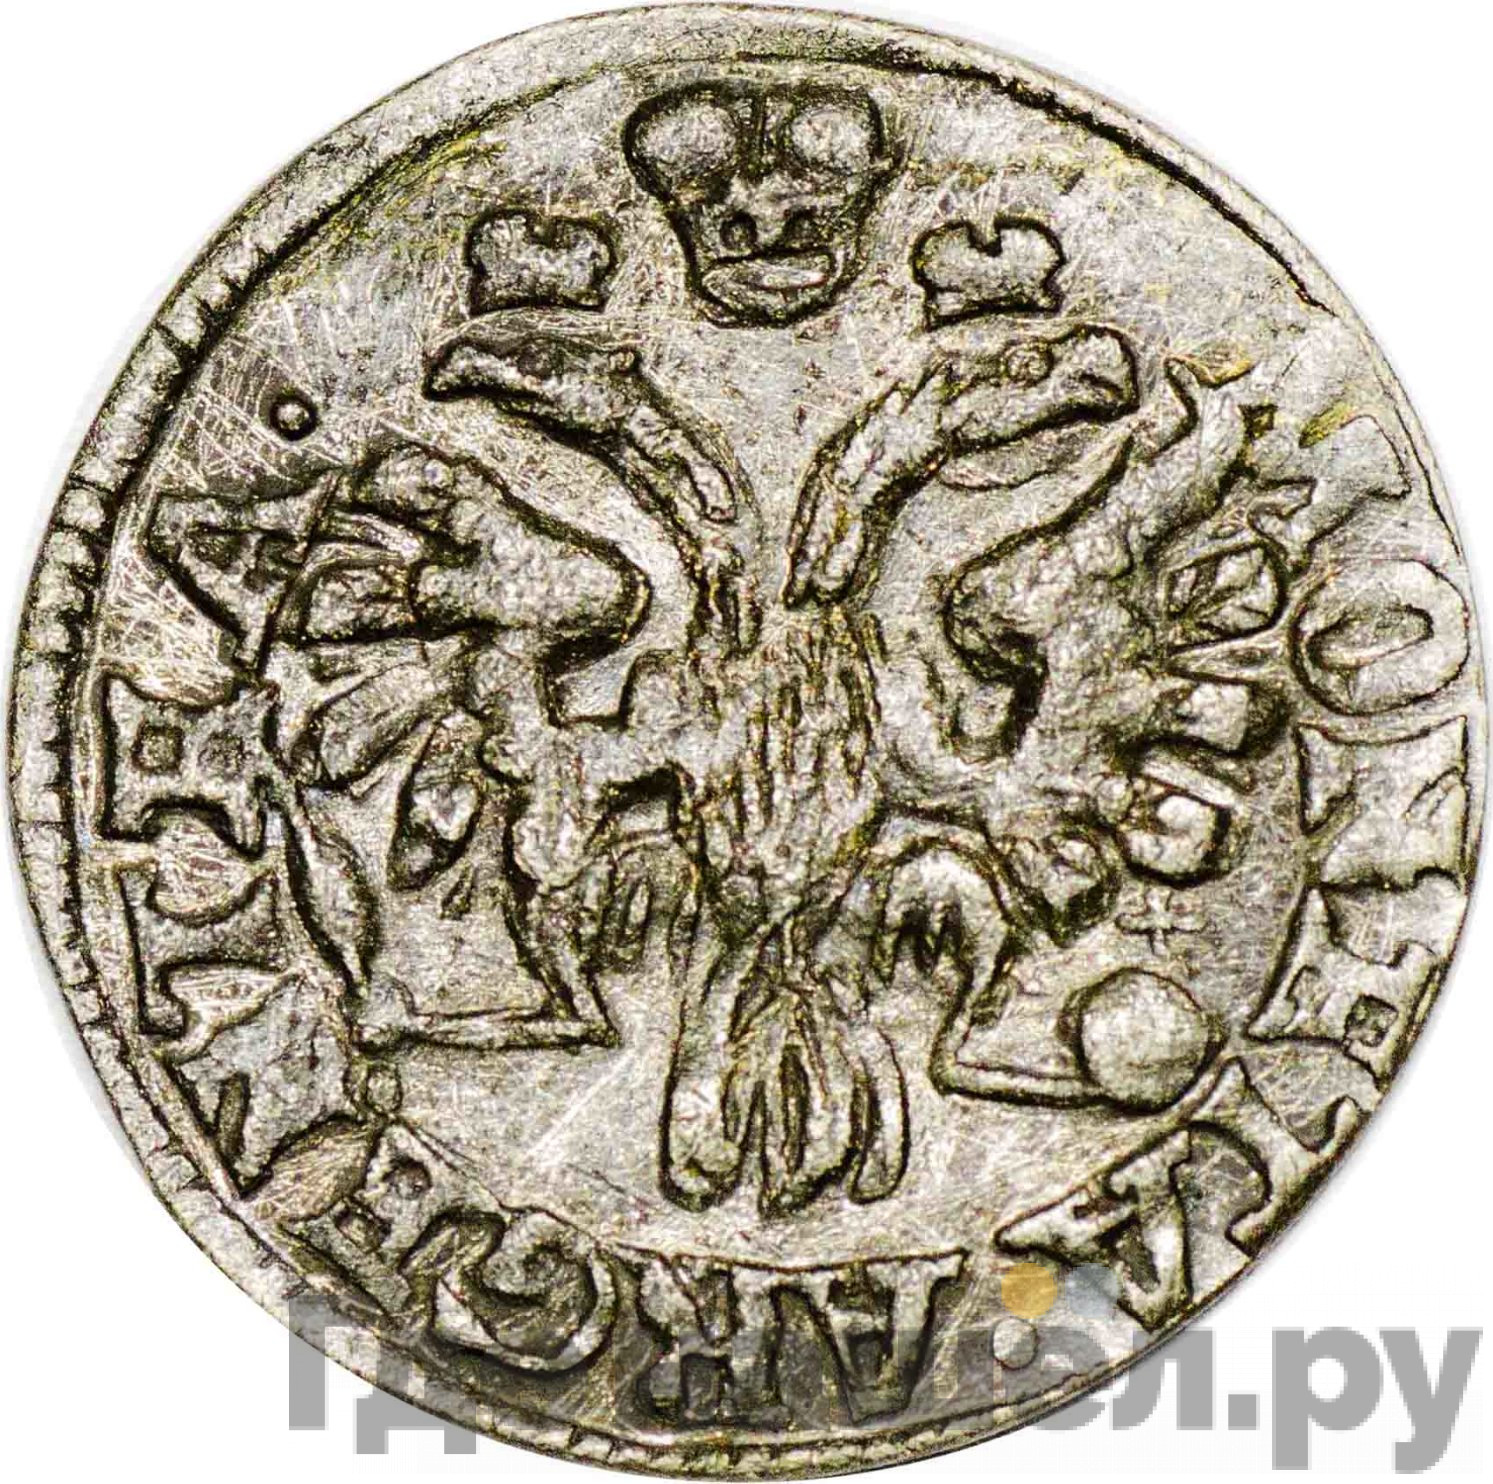 1 грош 1761 года Для Пруссии